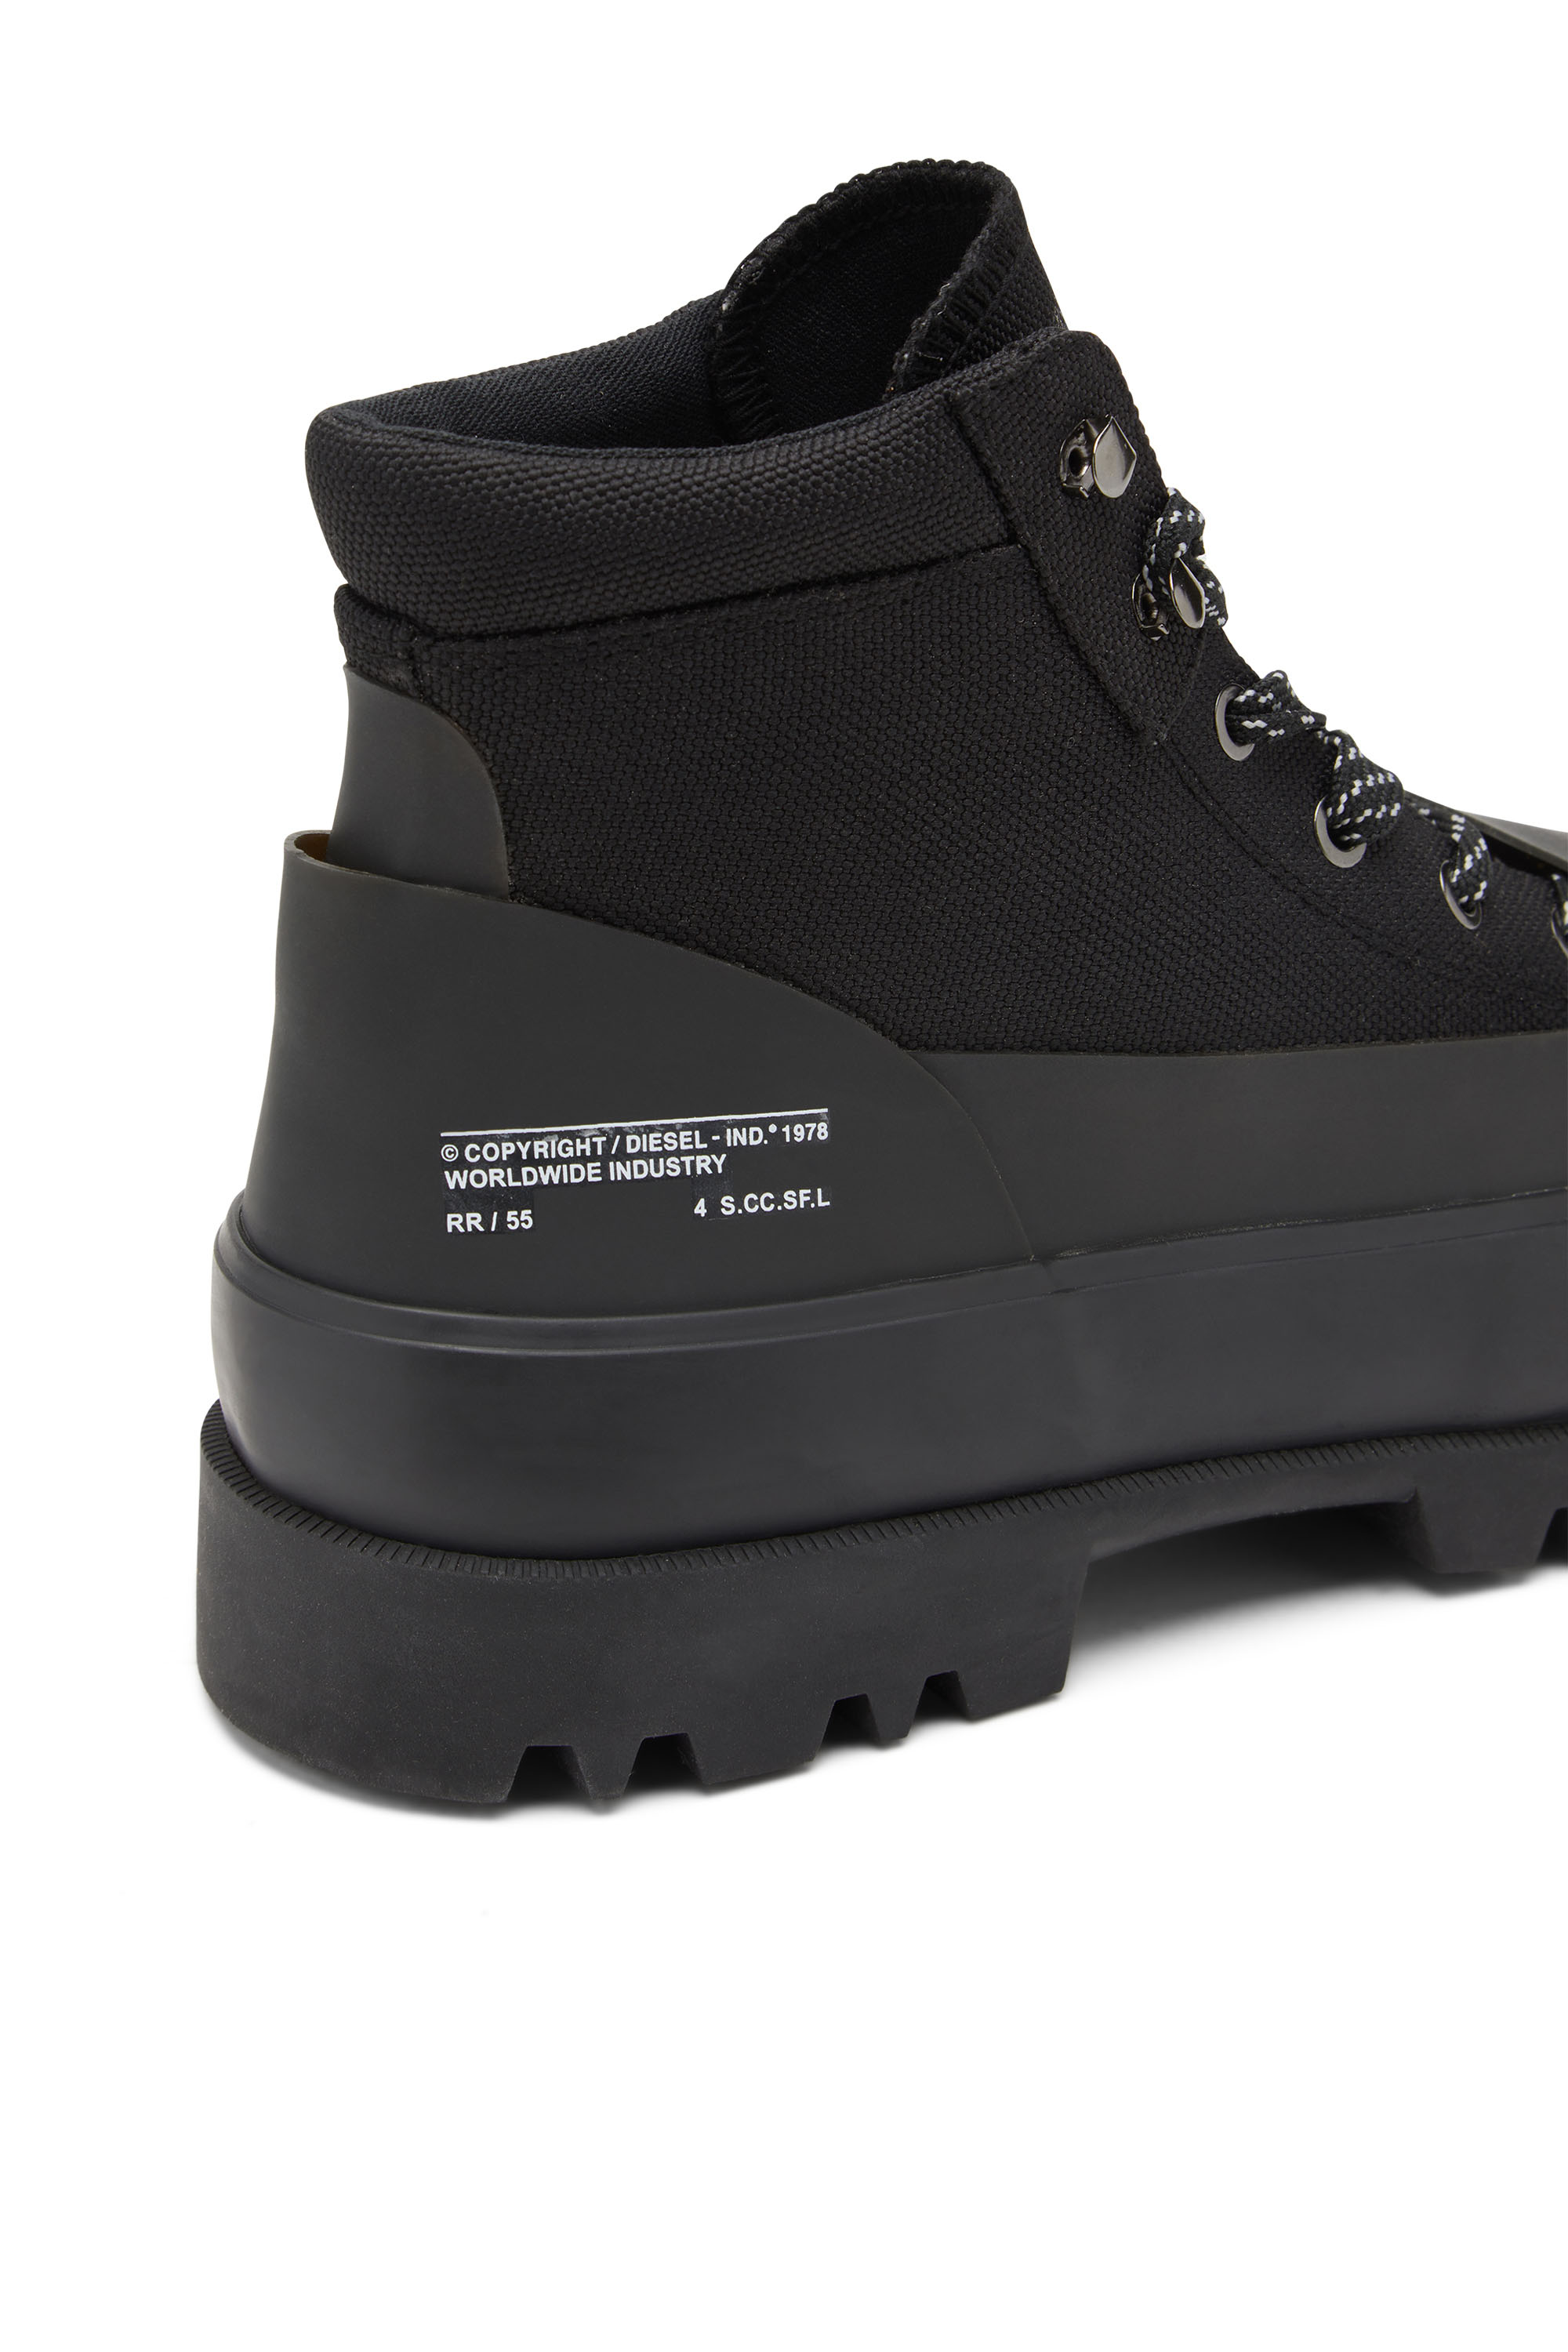 Men's Boots: Chelsea, Combat, Leather | Diesel